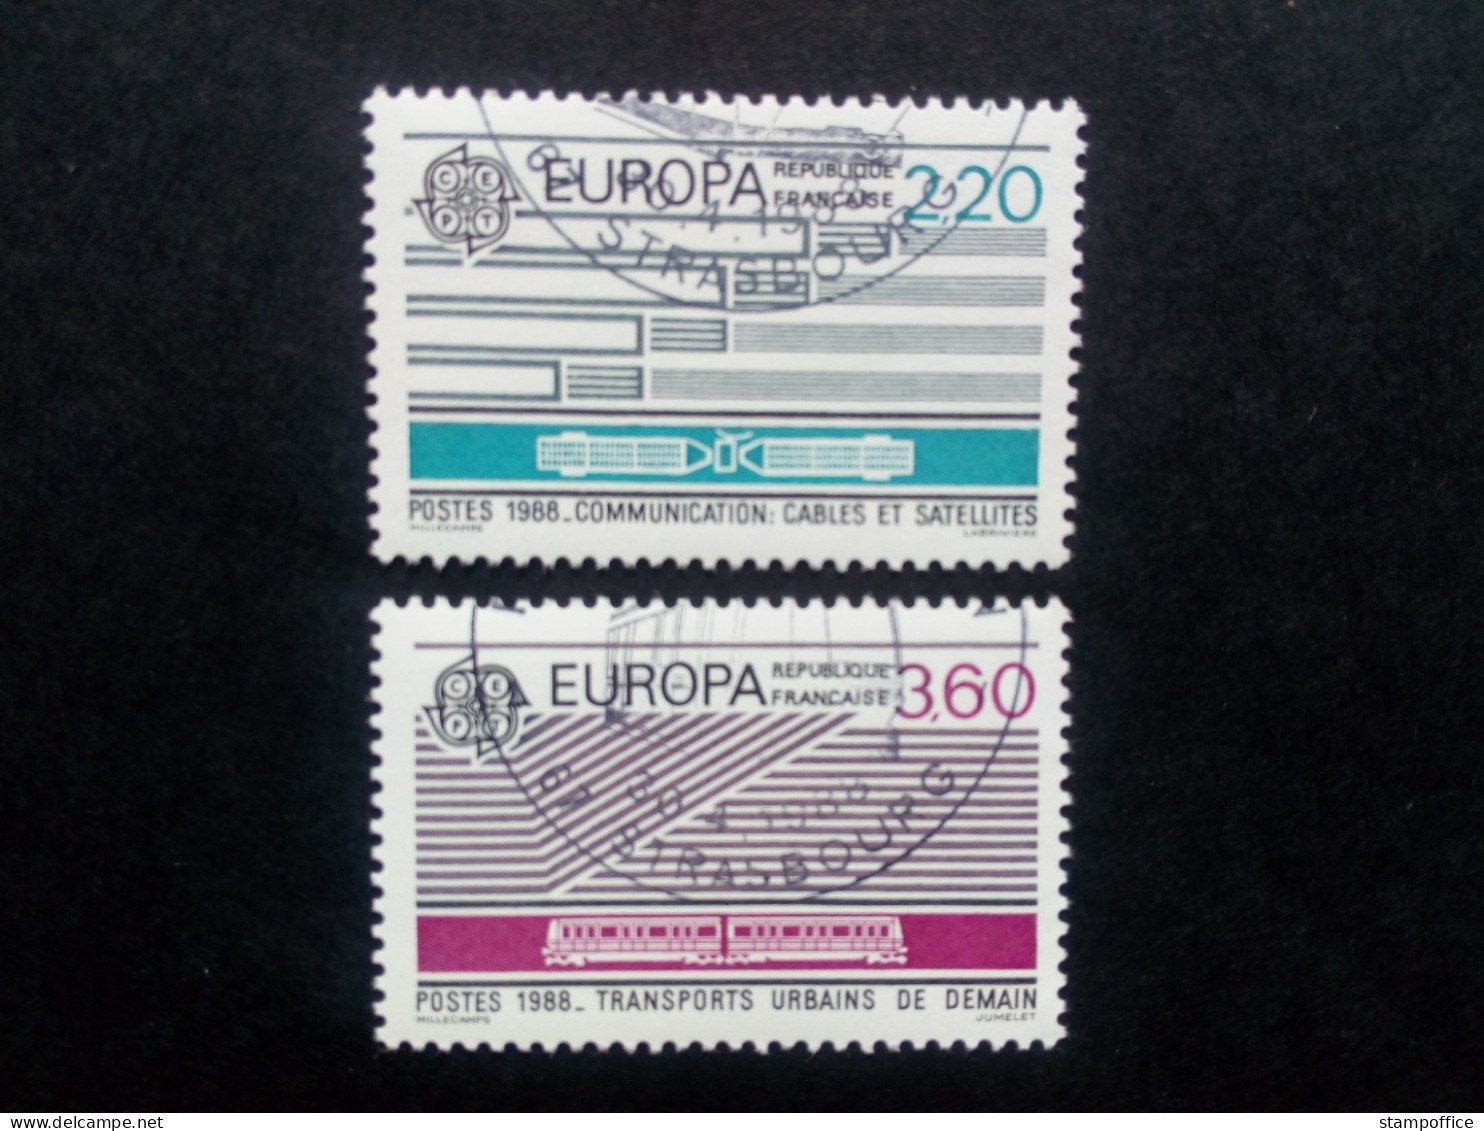 FRANKREICH MI-NR. 2667-2668 GESTEMPELT(USED) EUROPA 1988 TRANSPORT- Und KOMMUNIKATIONSMITTEL - 1988